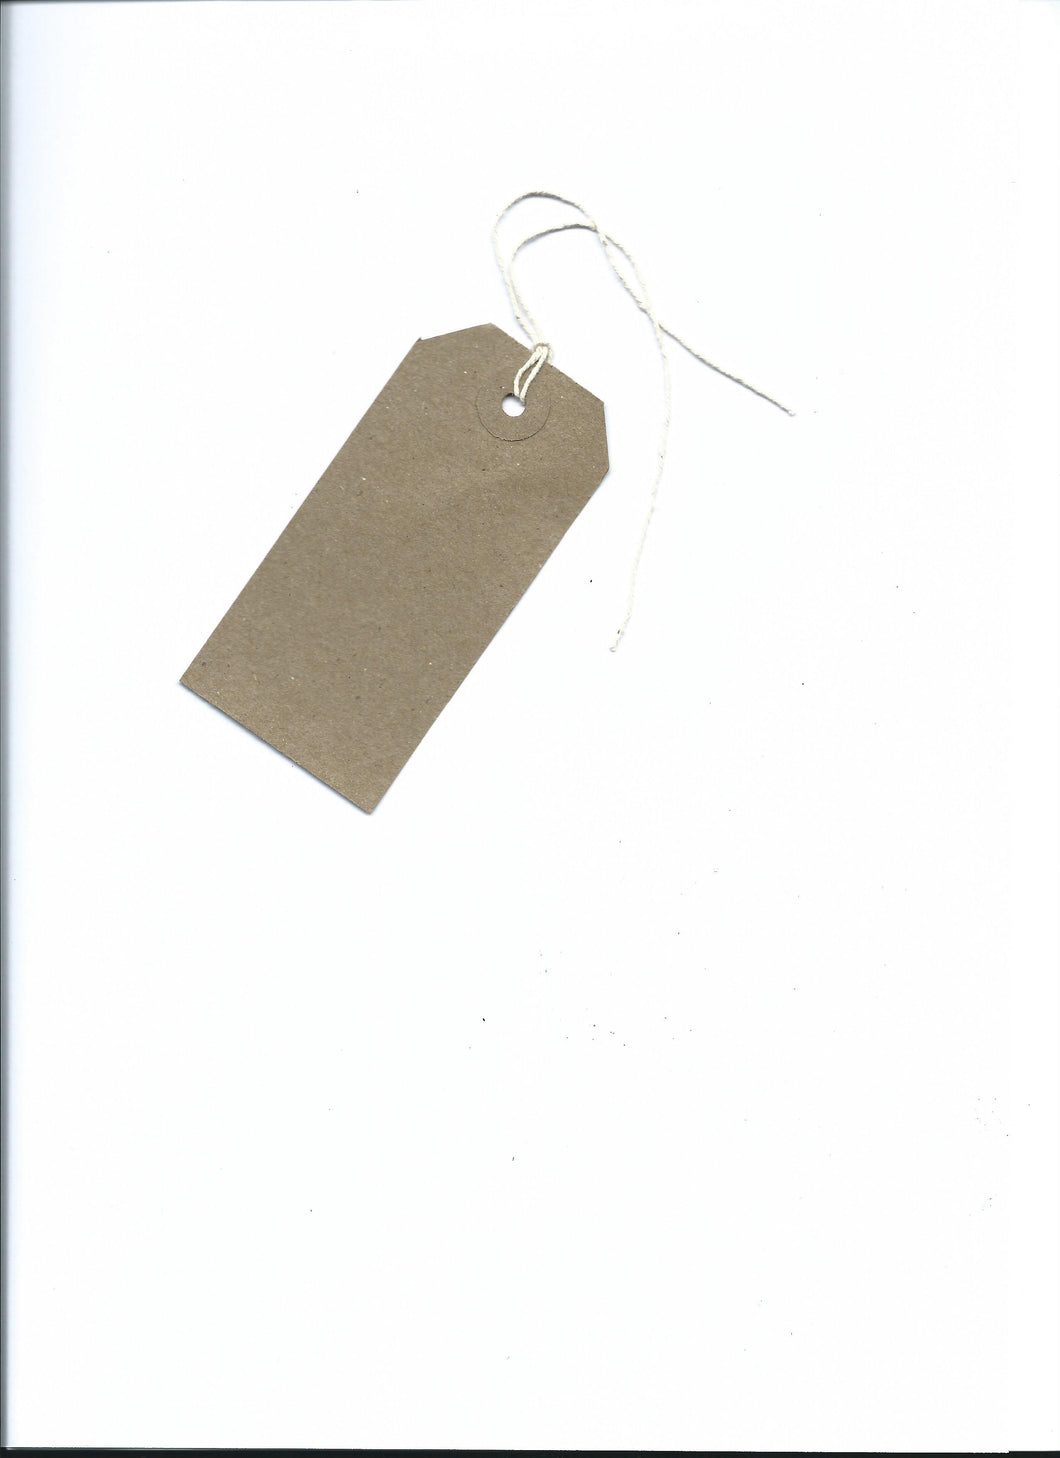 Cardboard Swing Tag - Kingsley Labels